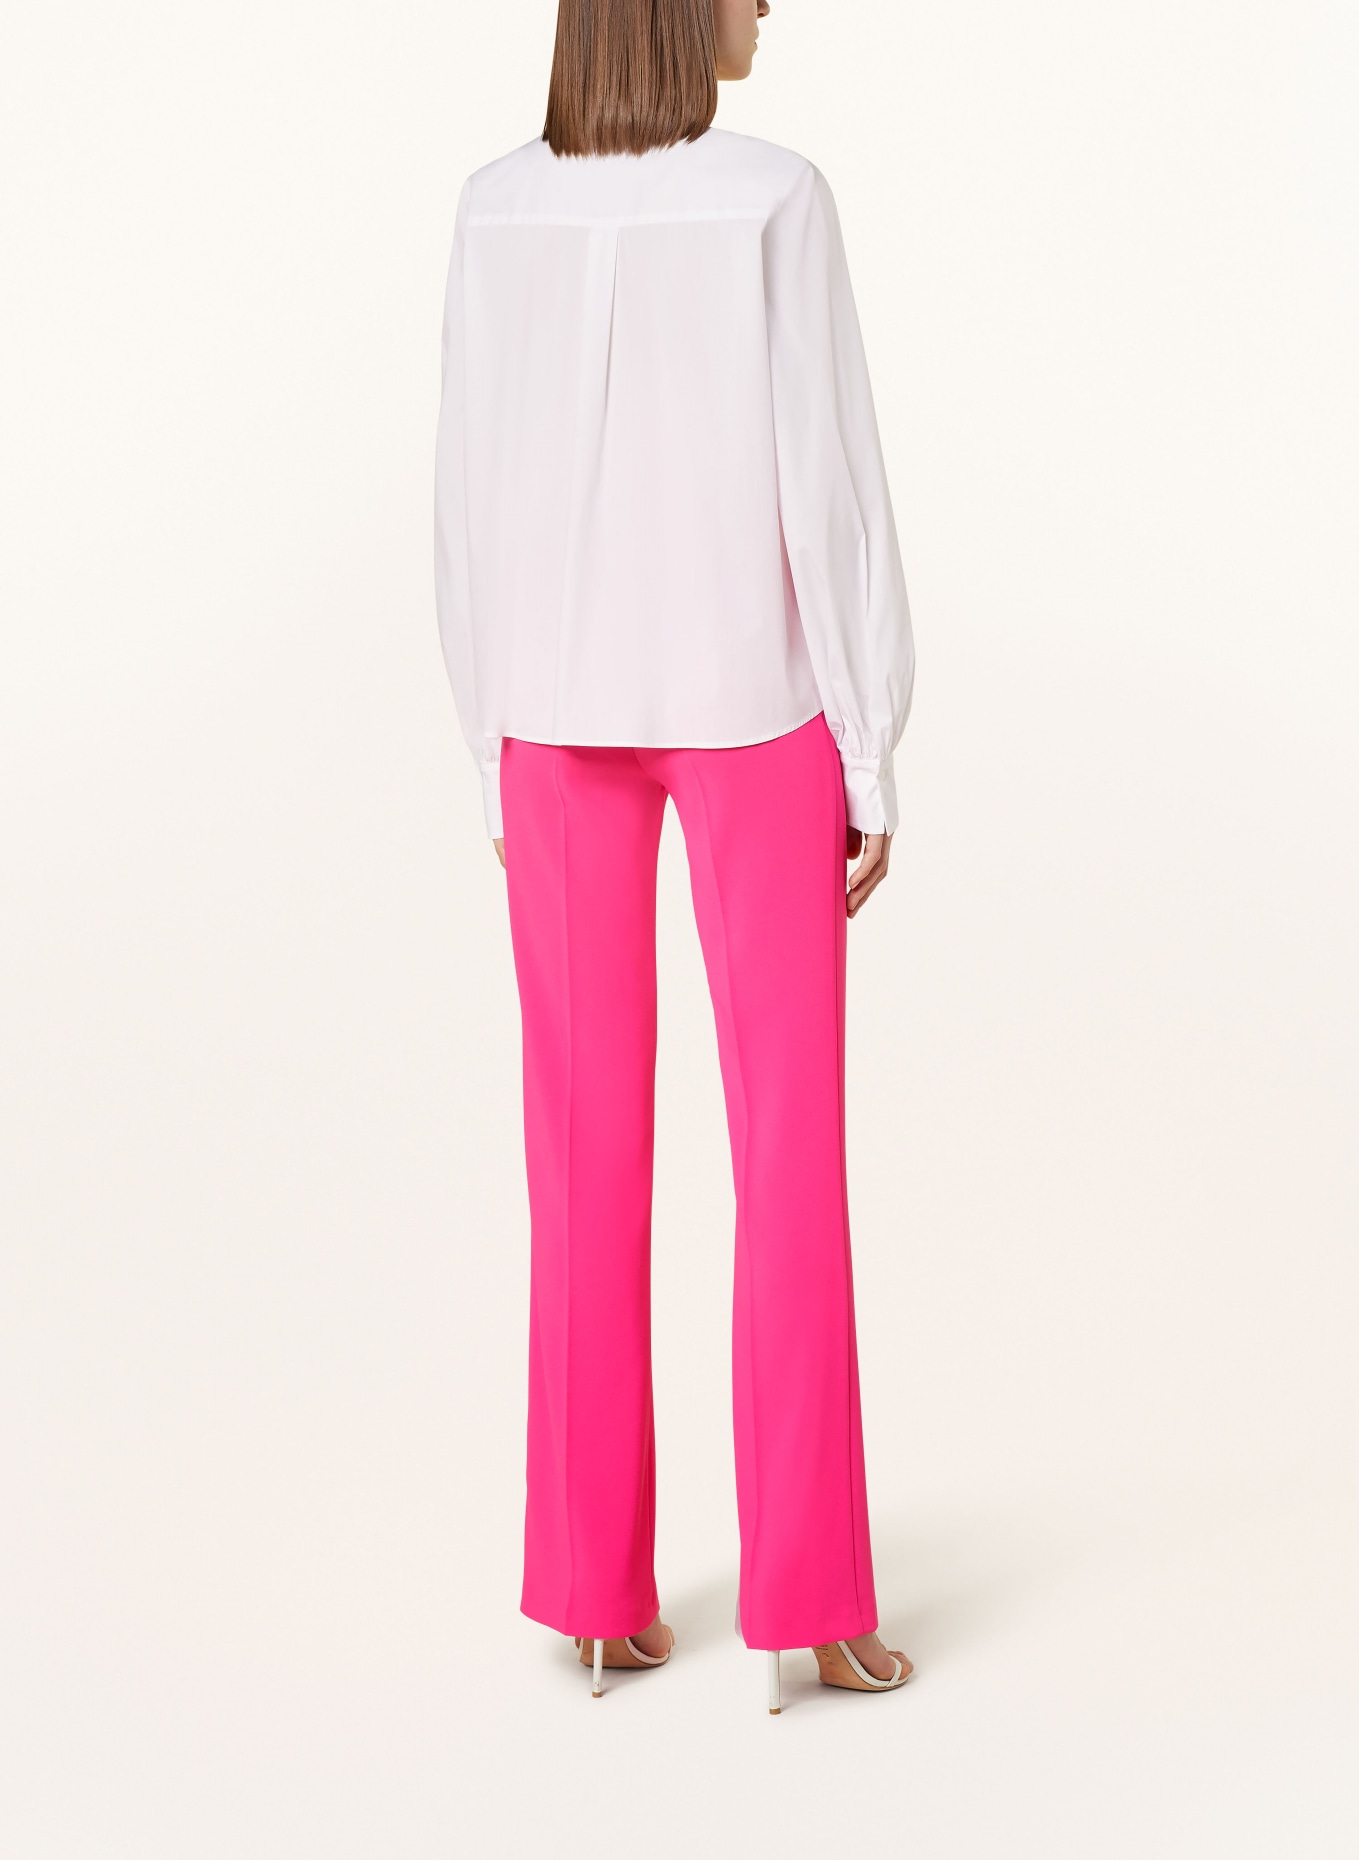 lilienfels Shirt blouse, Color: WHITE (Image 3)